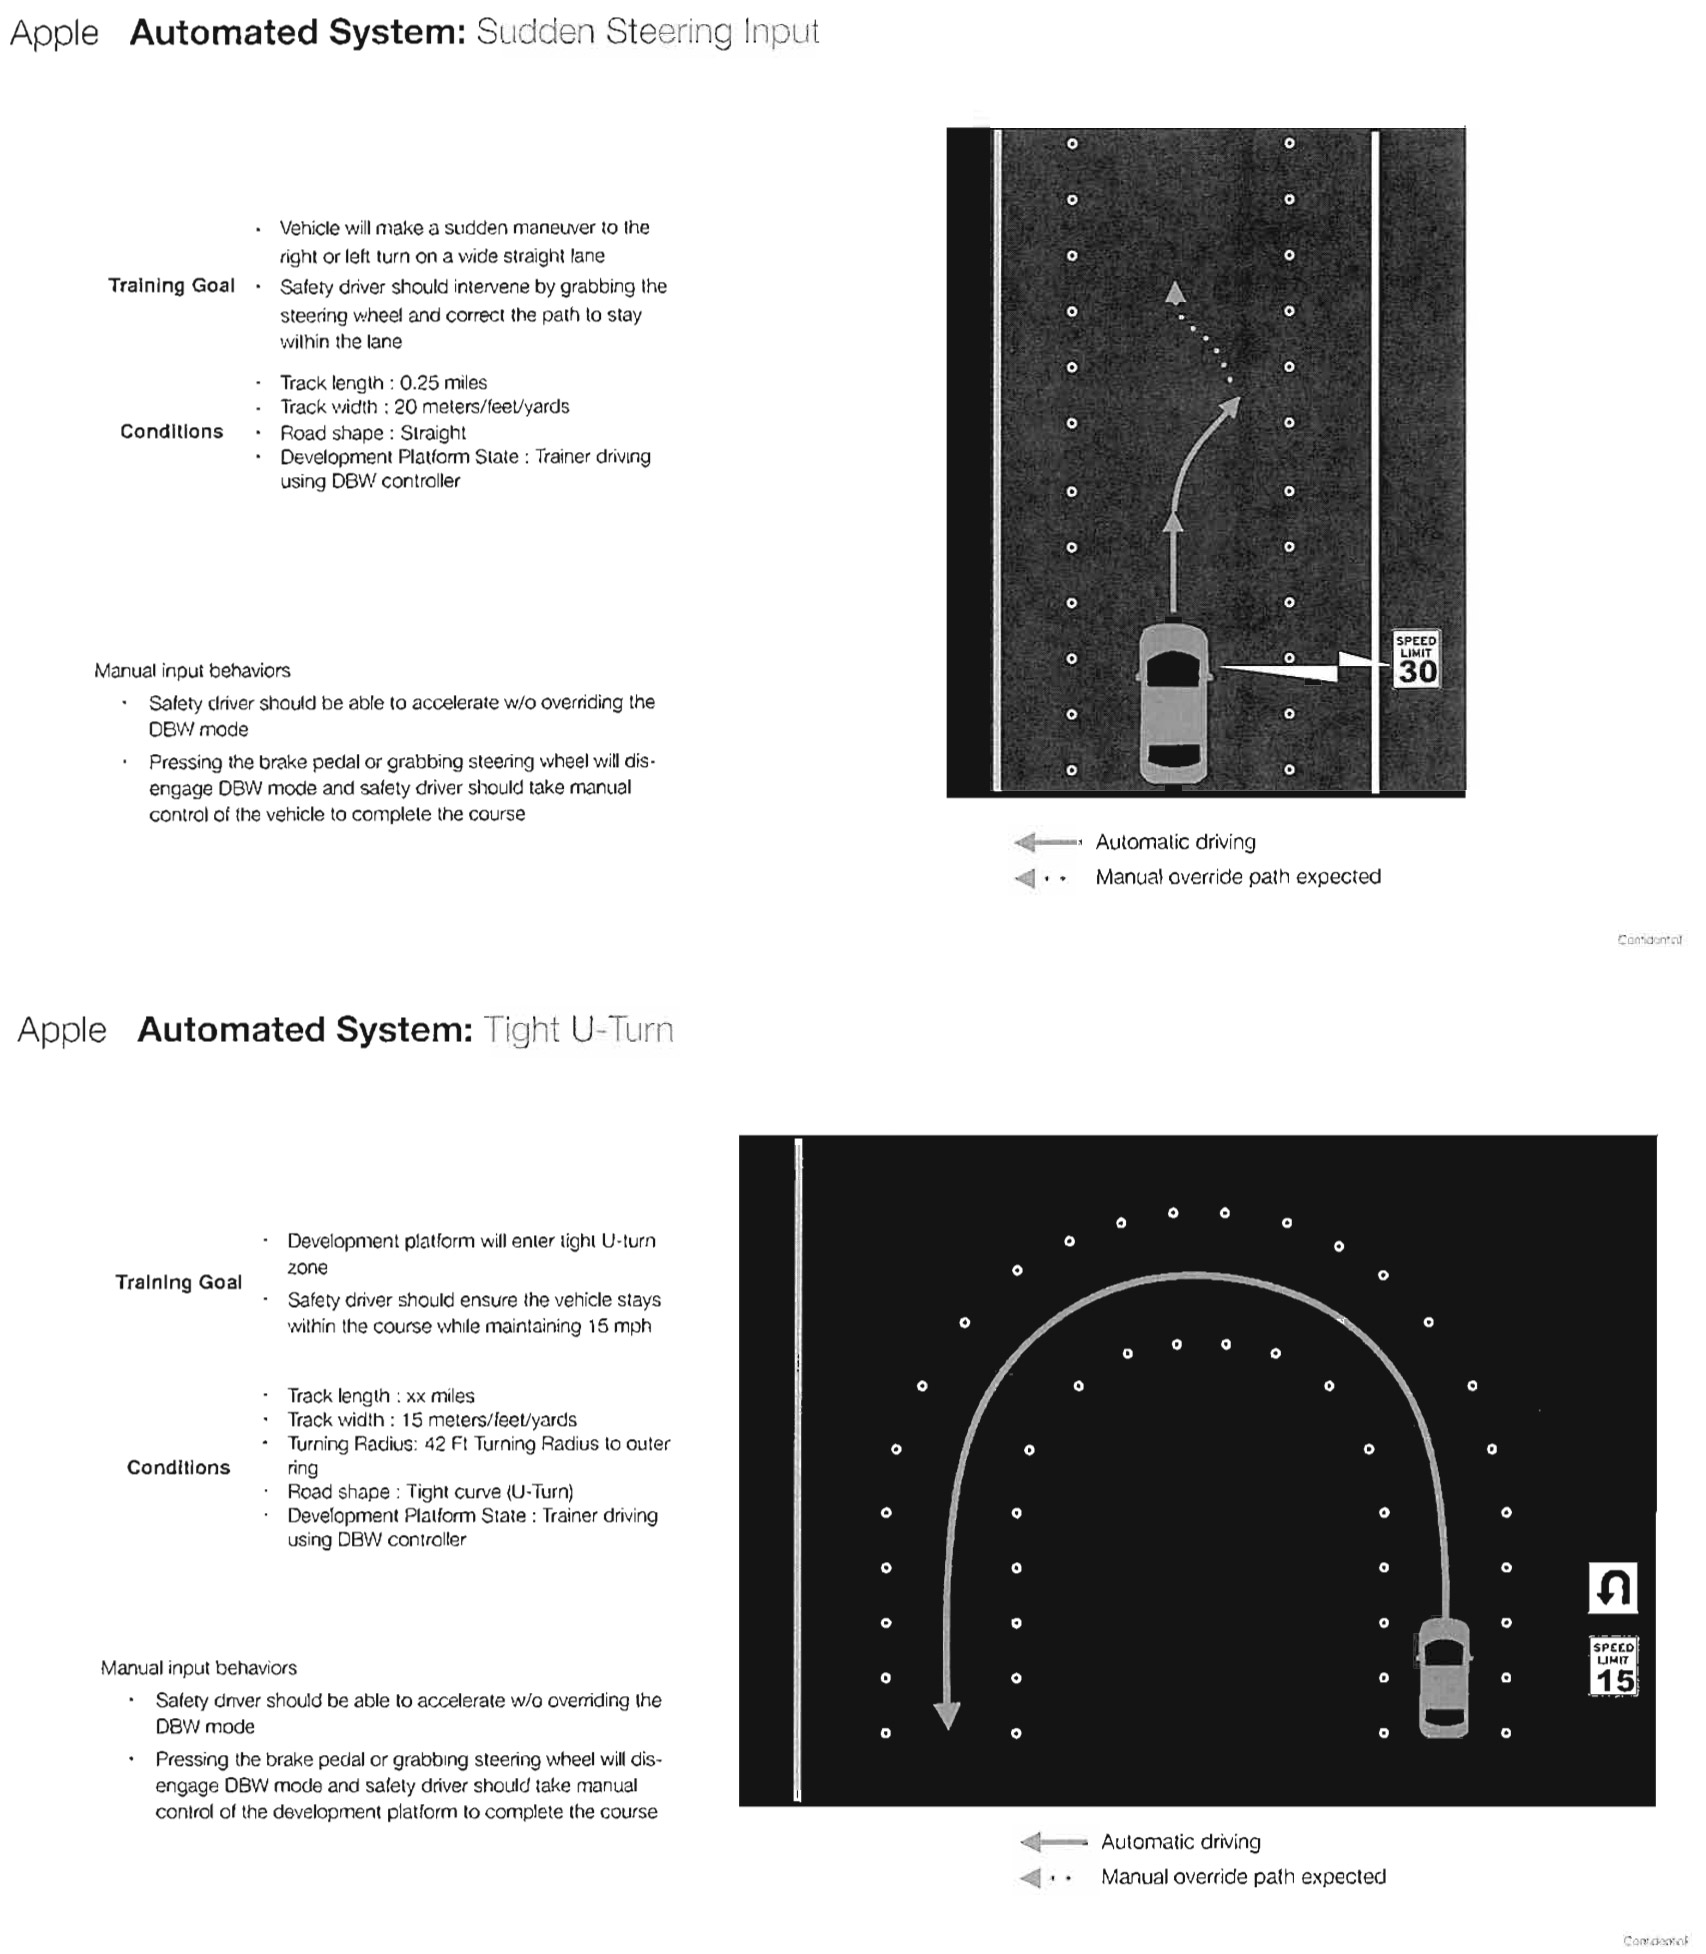 Documento filtrado de Apple que detalla pruebas de conducción para vehículos autónomos